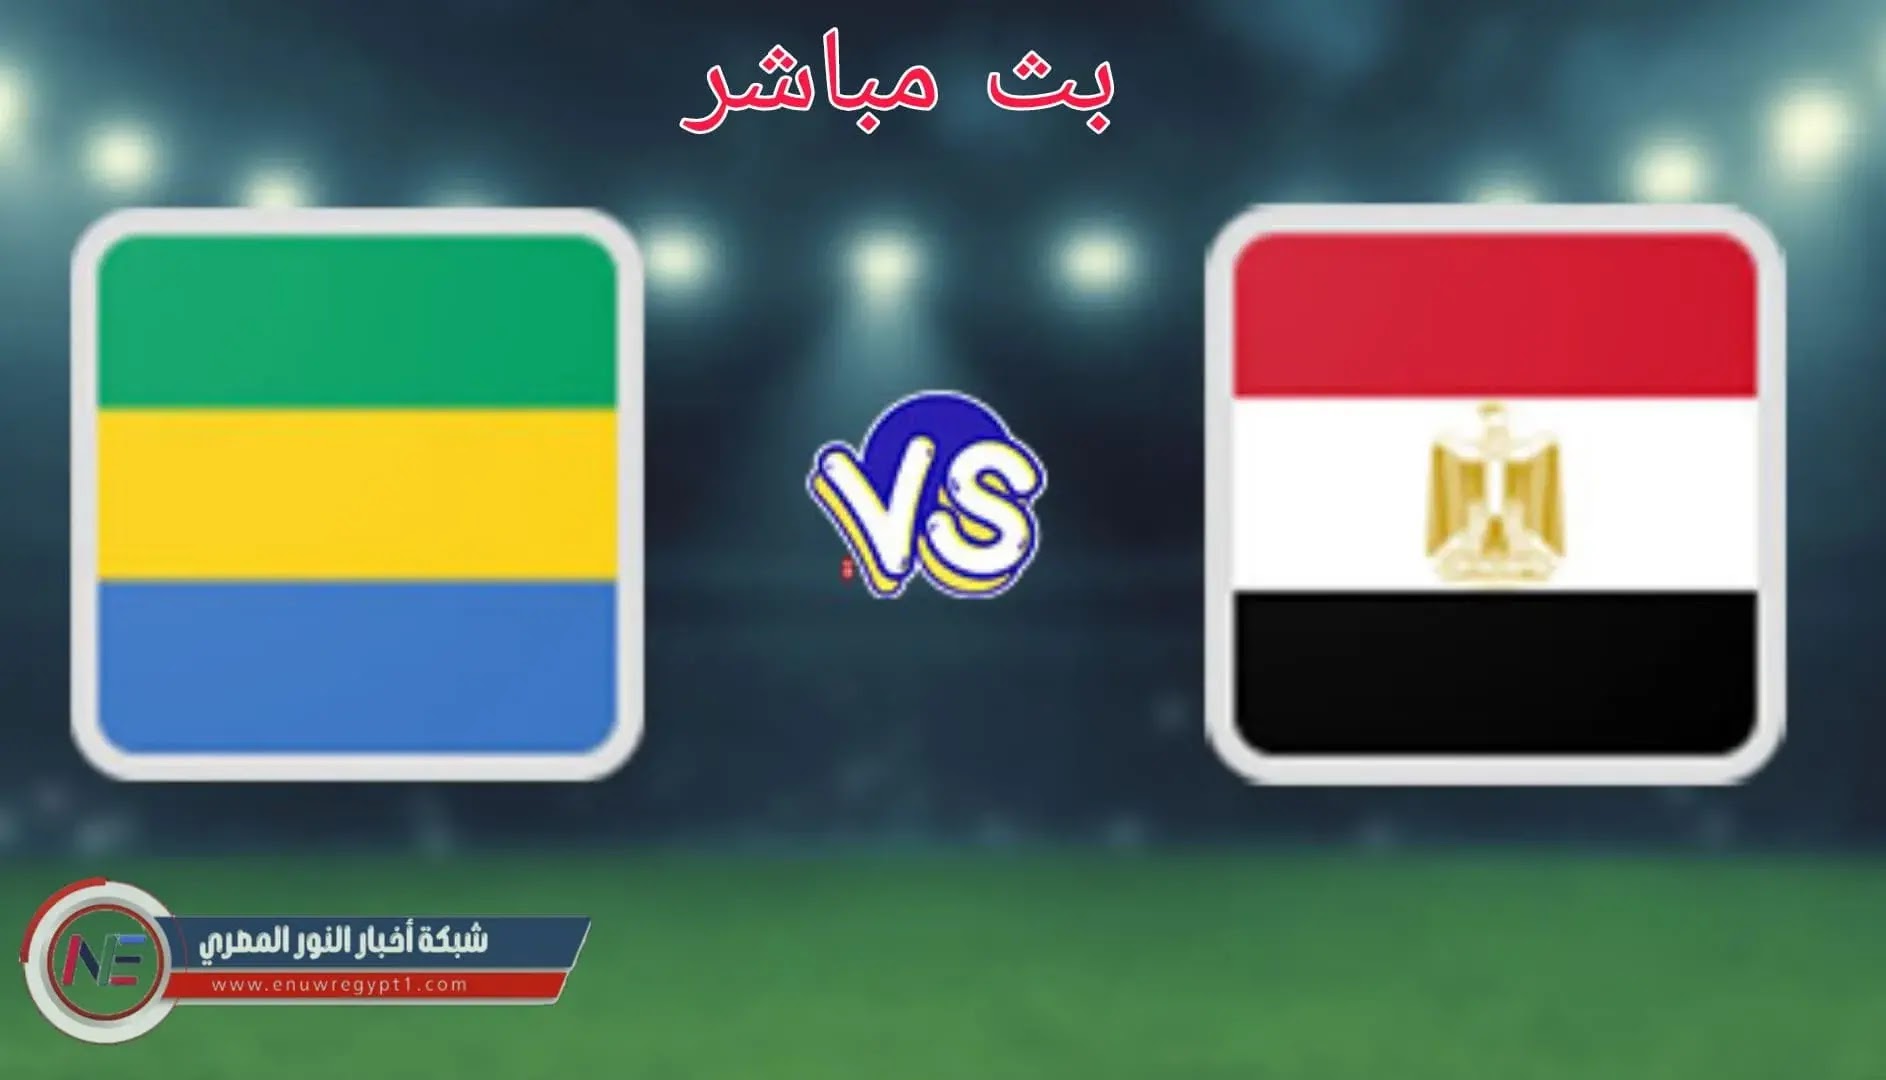 الان يلا شوت بث مباشر مباراة مصر يوتيوب ||  مشاهدة مباراة مصر و الجابون بث مباشر بتاريخ اليوم الثلاثاء 16-11-2021 في تصفيات افريقيا المؤهلة الي كأس العالم